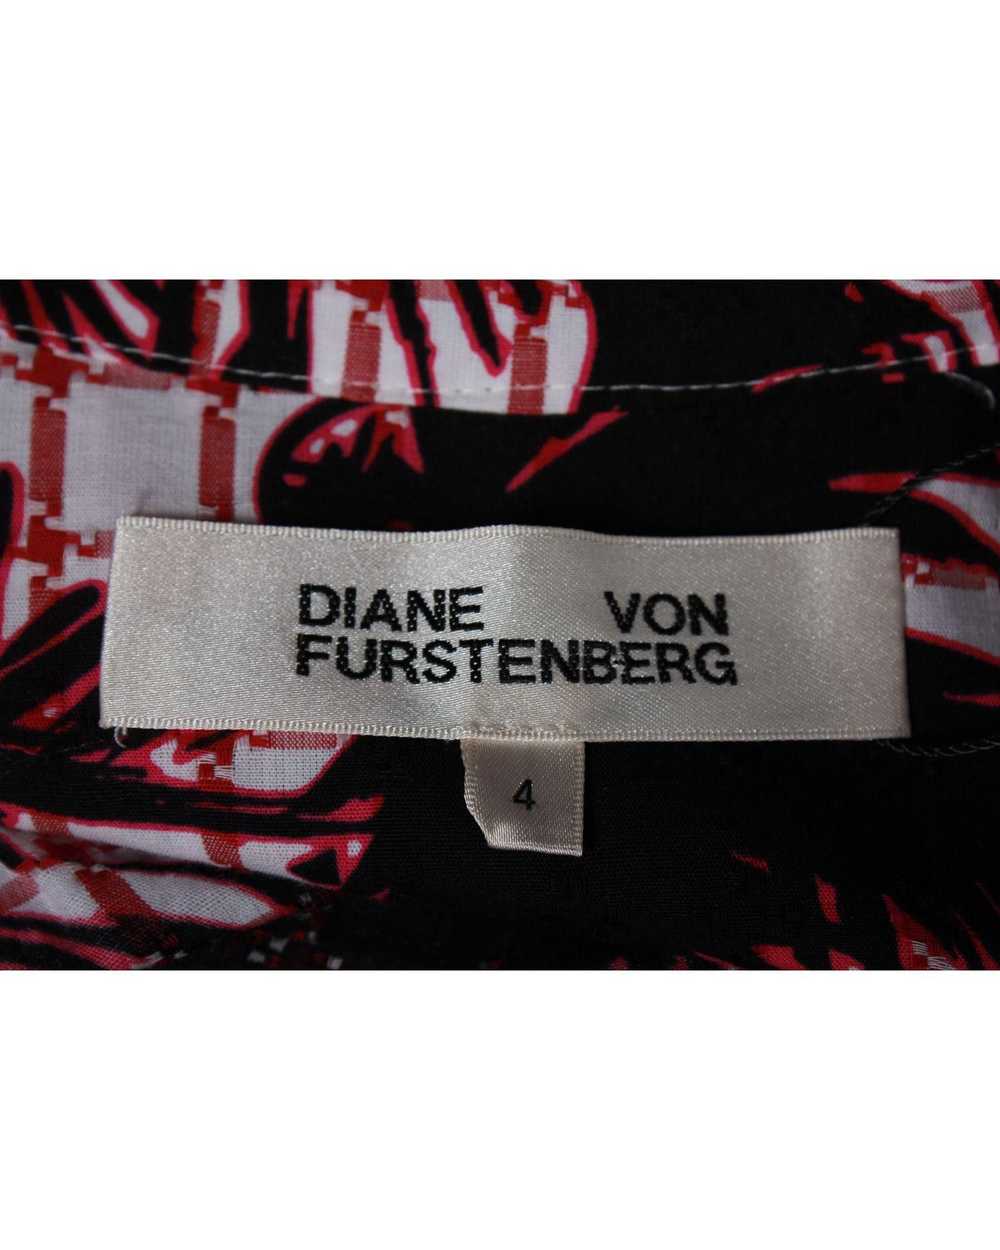 Diane von Furstenberg Print Wrap Dress - image 5